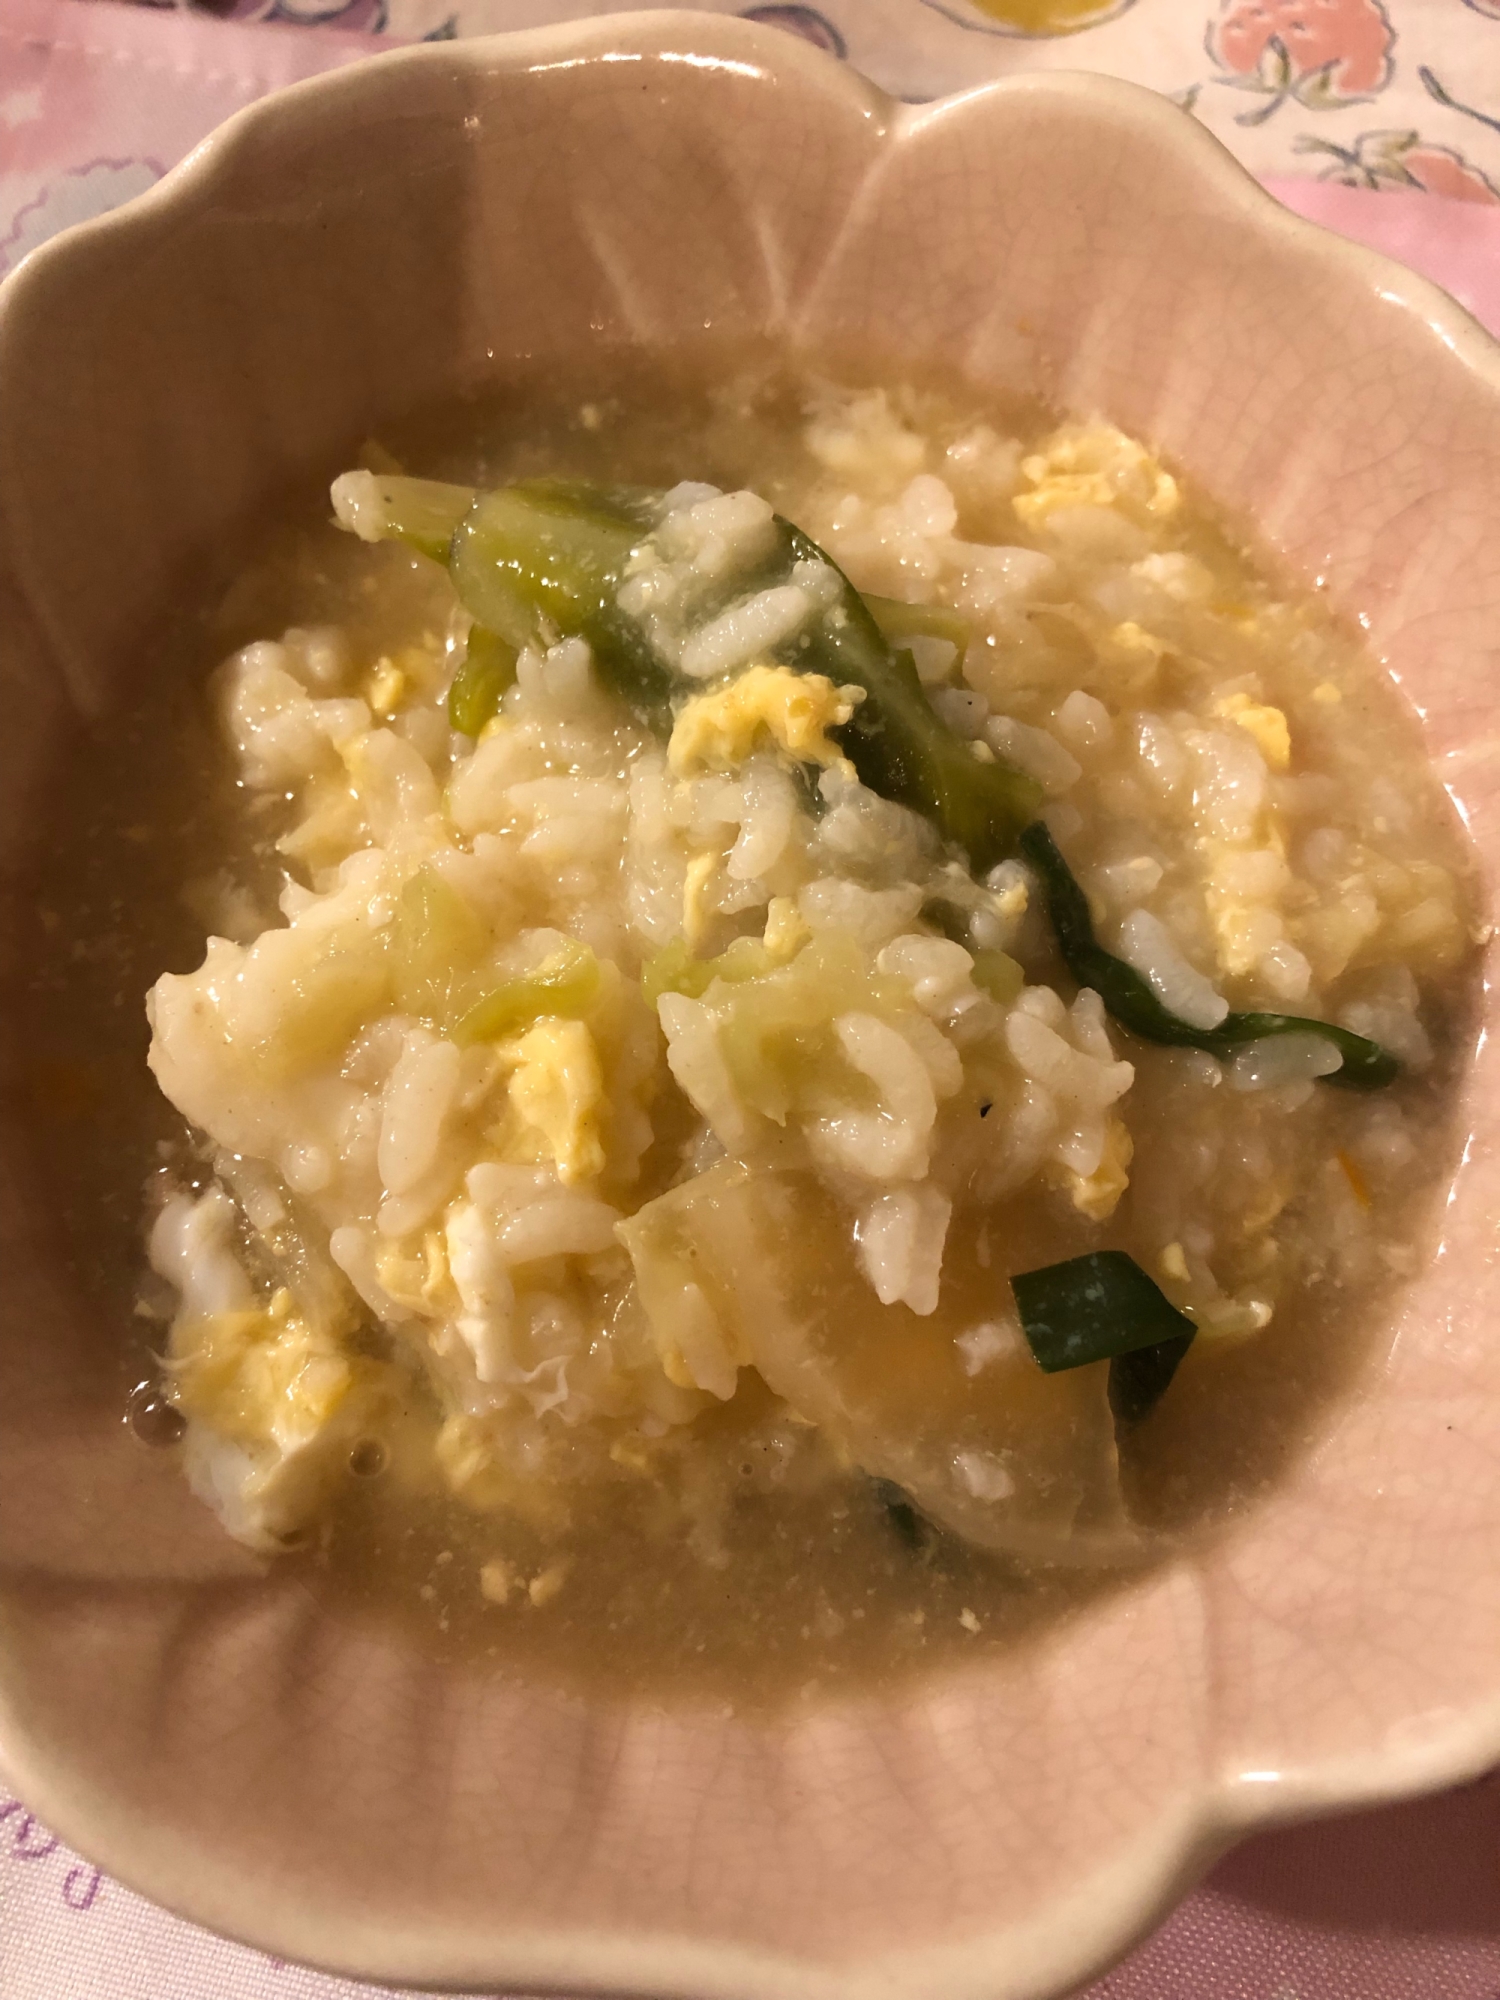 鍋の〆に卵雑炊